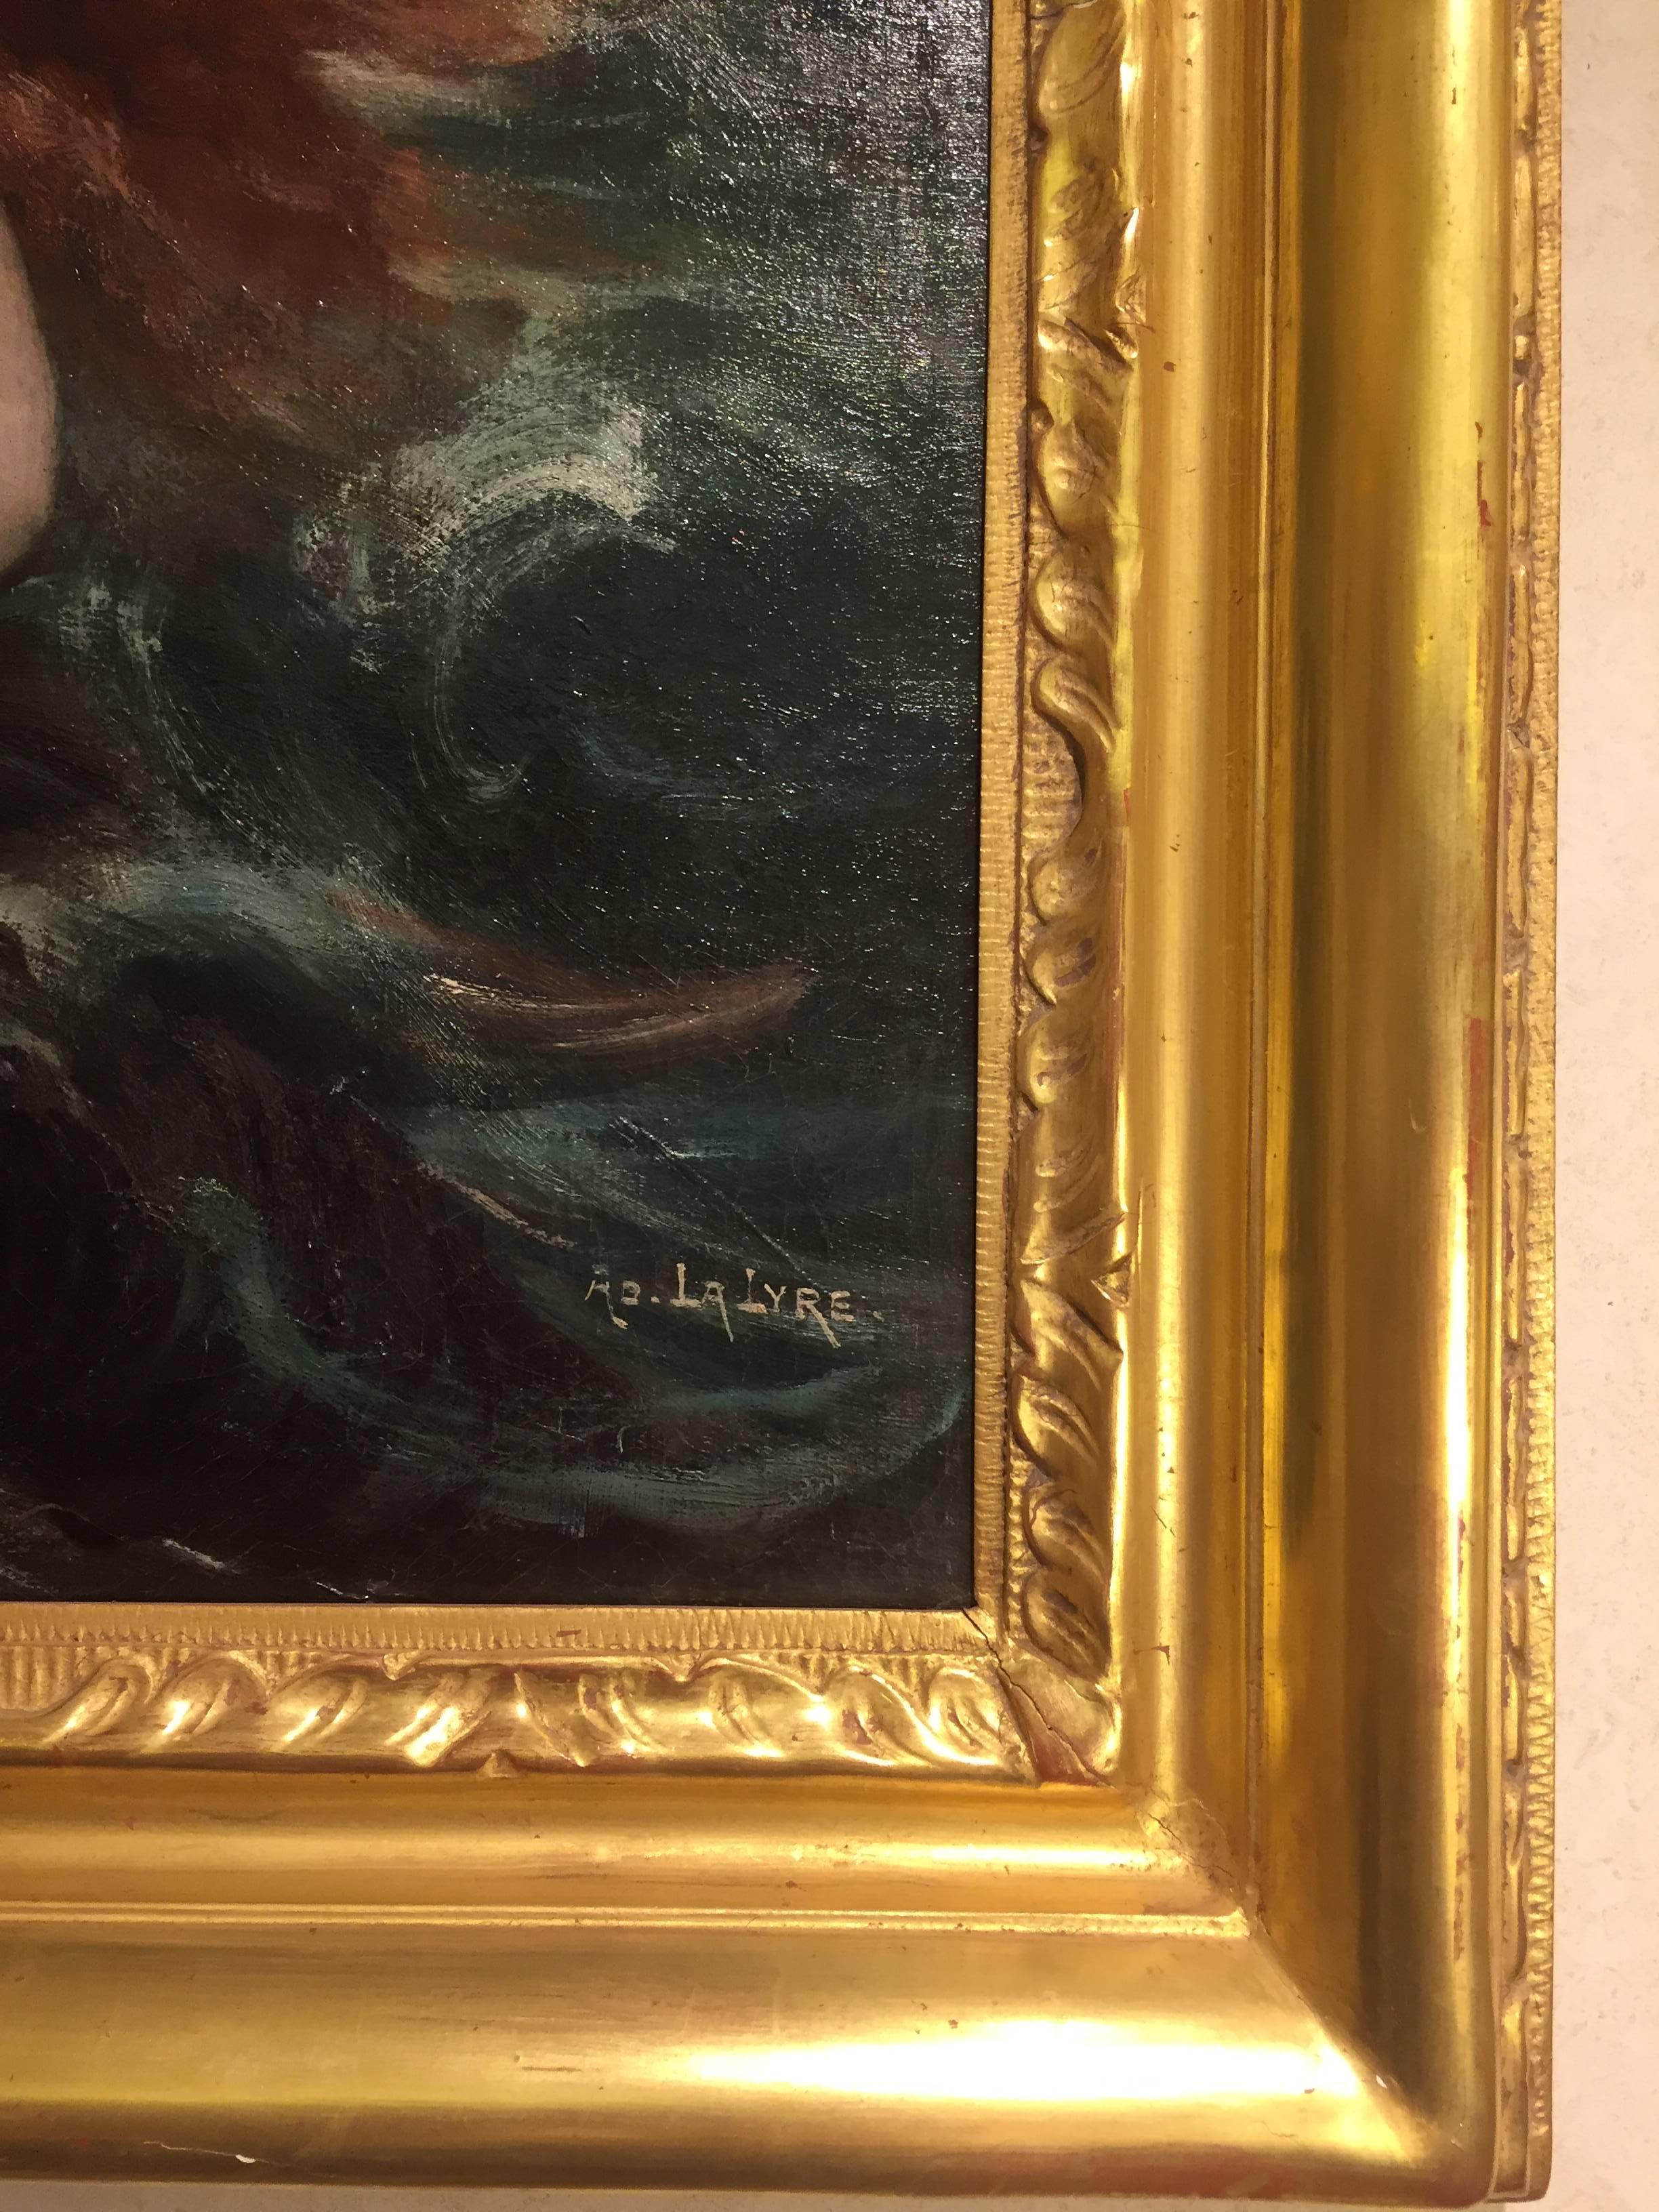 Le Concert des Sirènes  - Painting de Adolphe Lalyre 